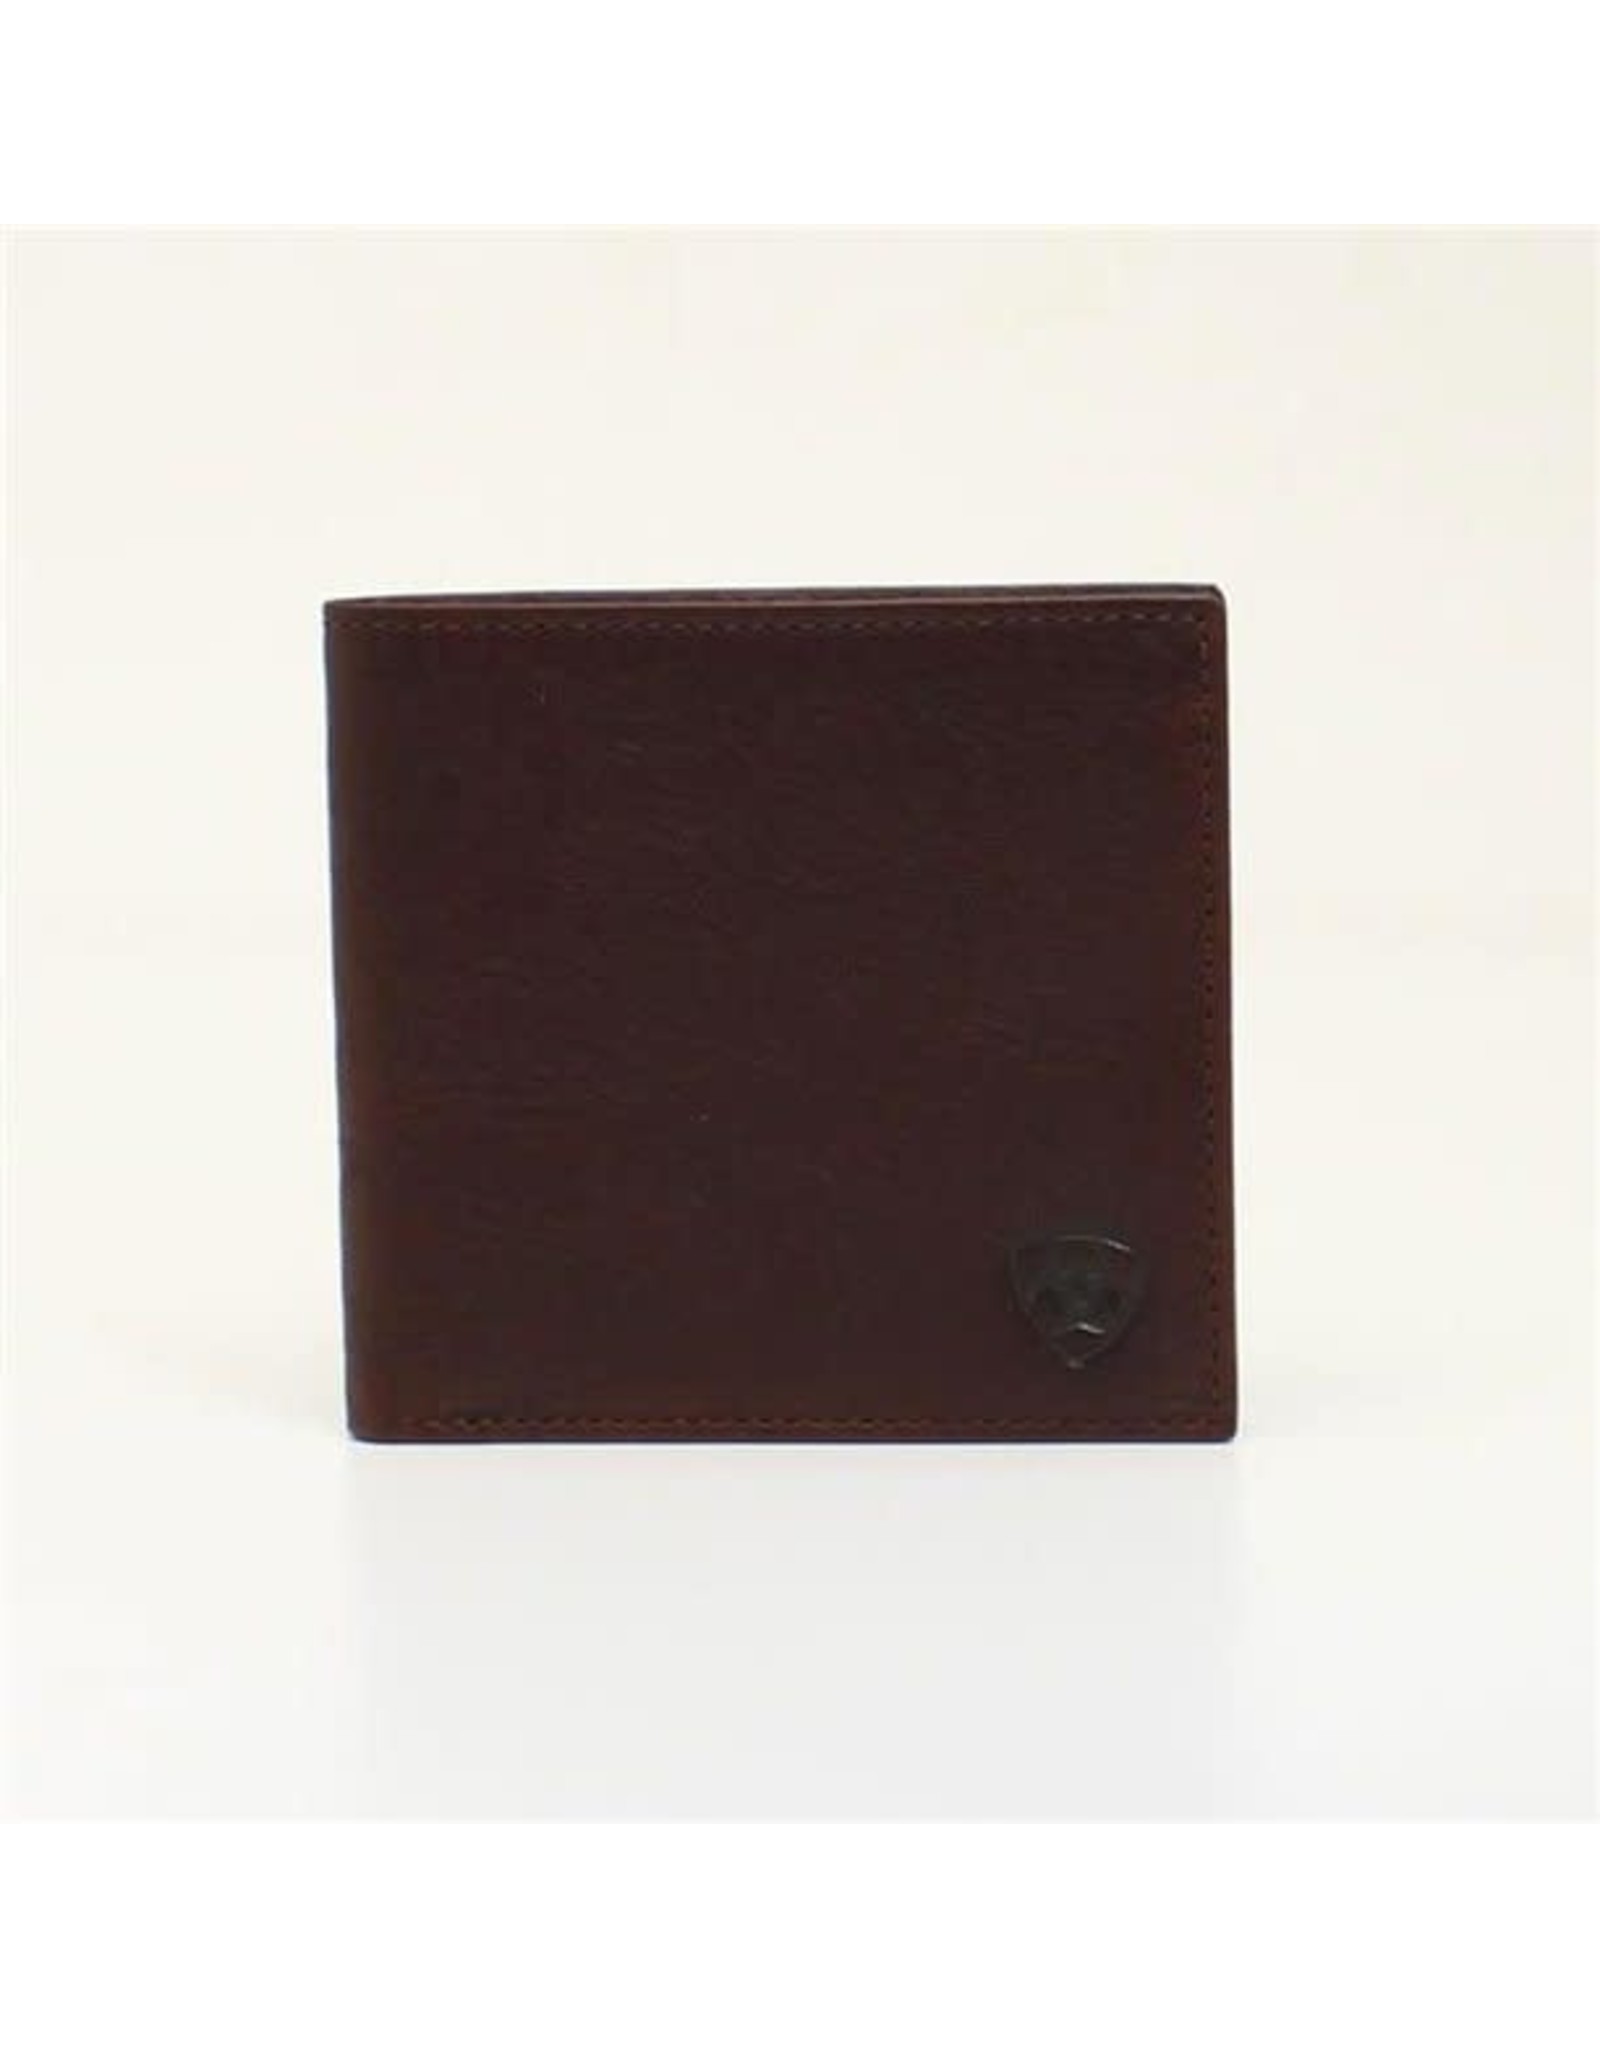 Ariat Dark Oil Leather A35307283 Bifold Wallet